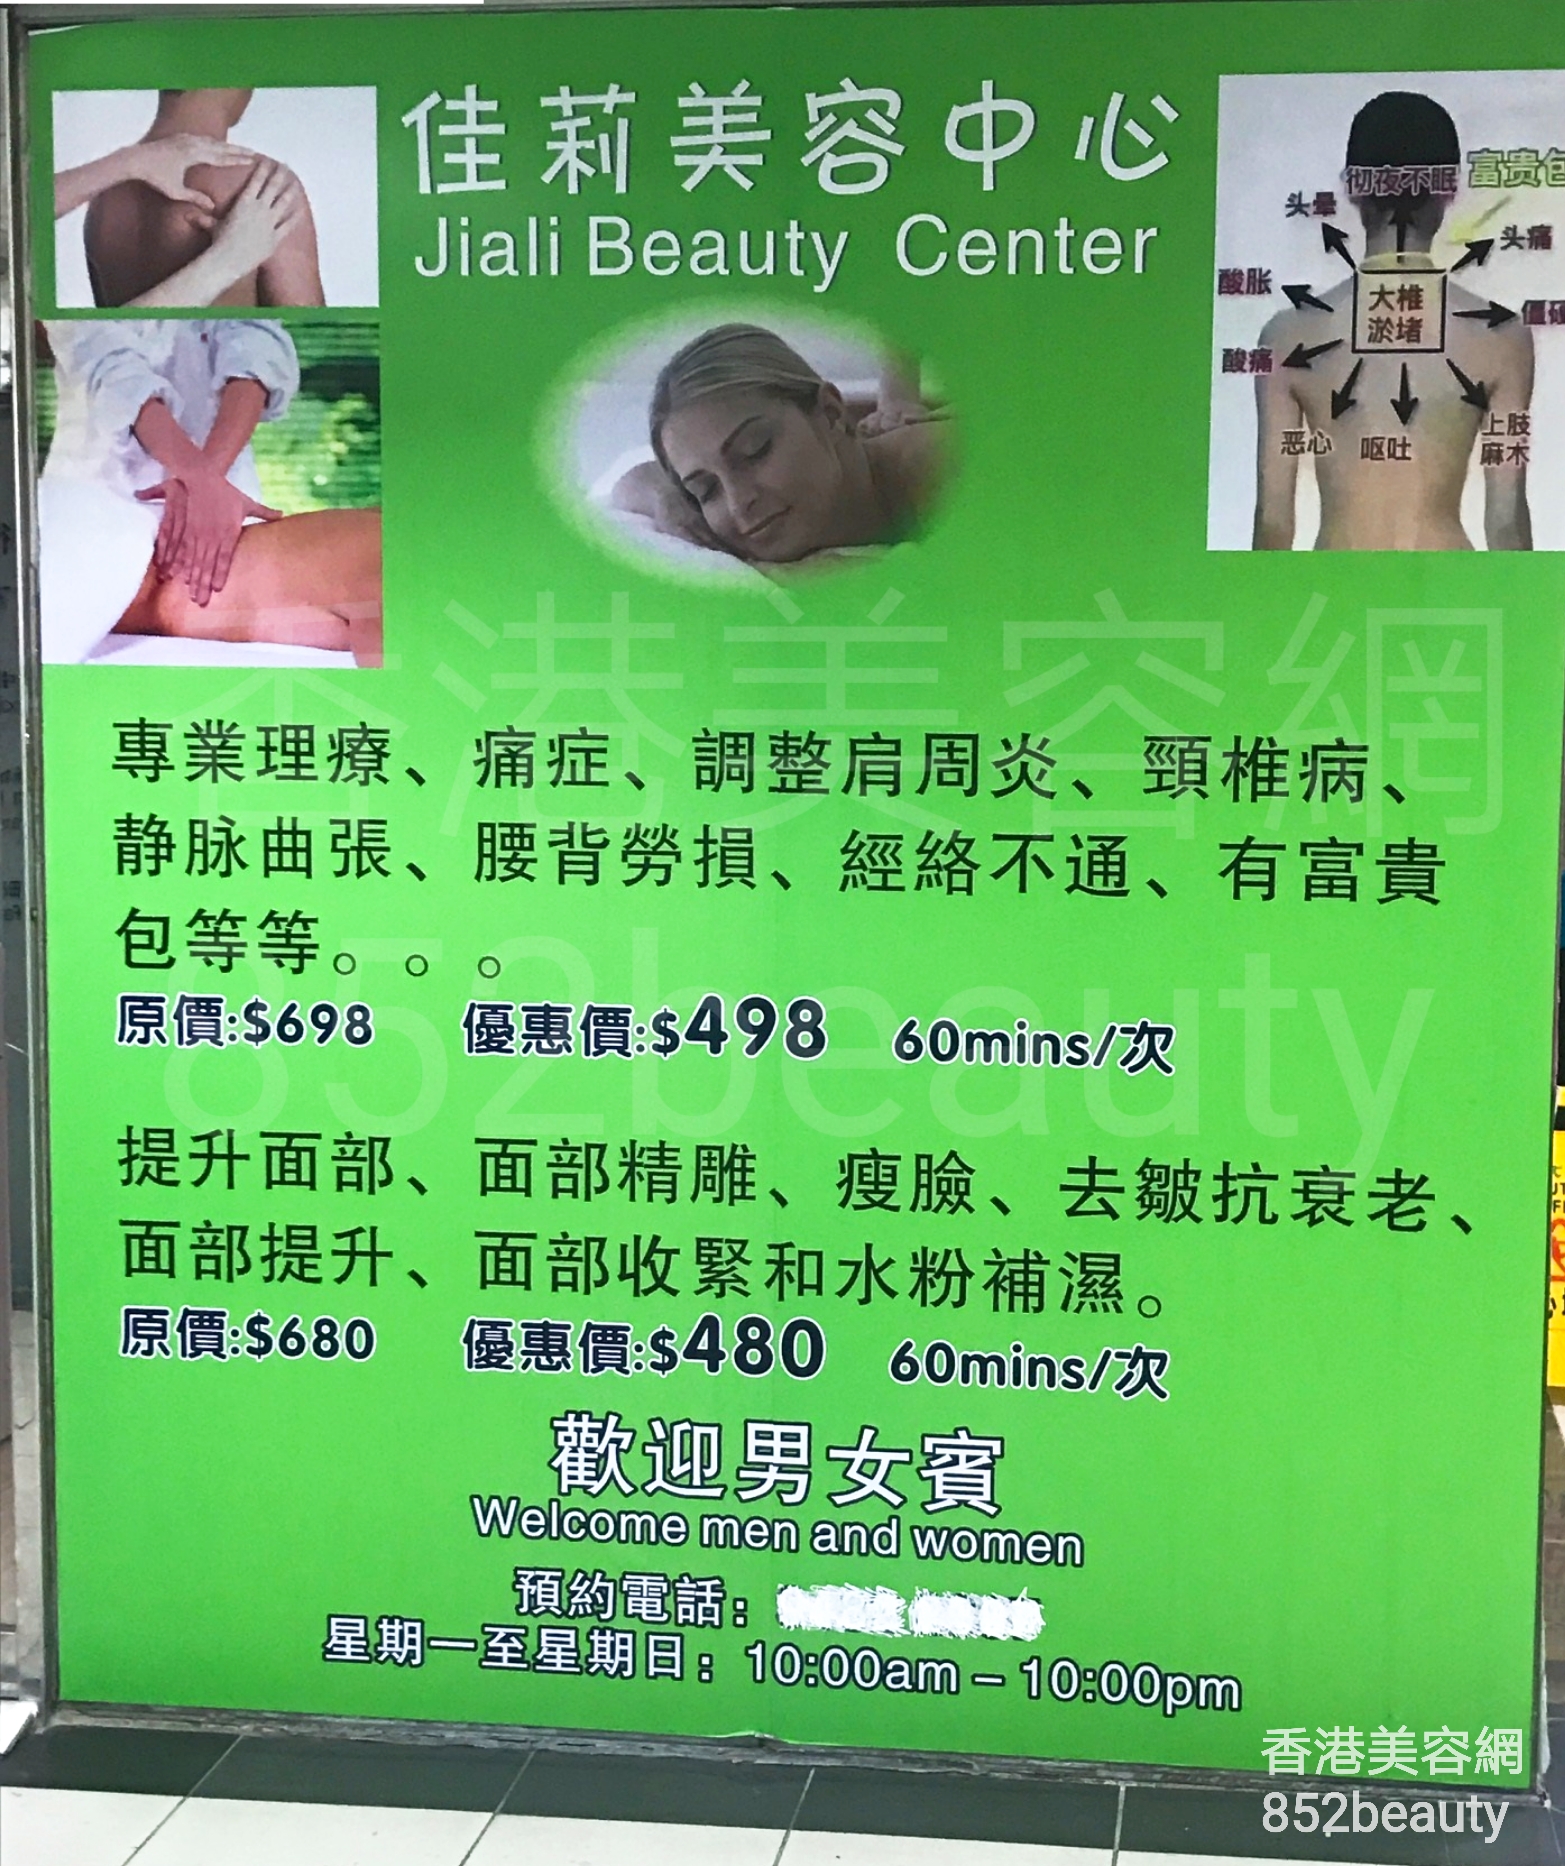 面部護理: 佳莉美容中心 Jiali Beauty Center